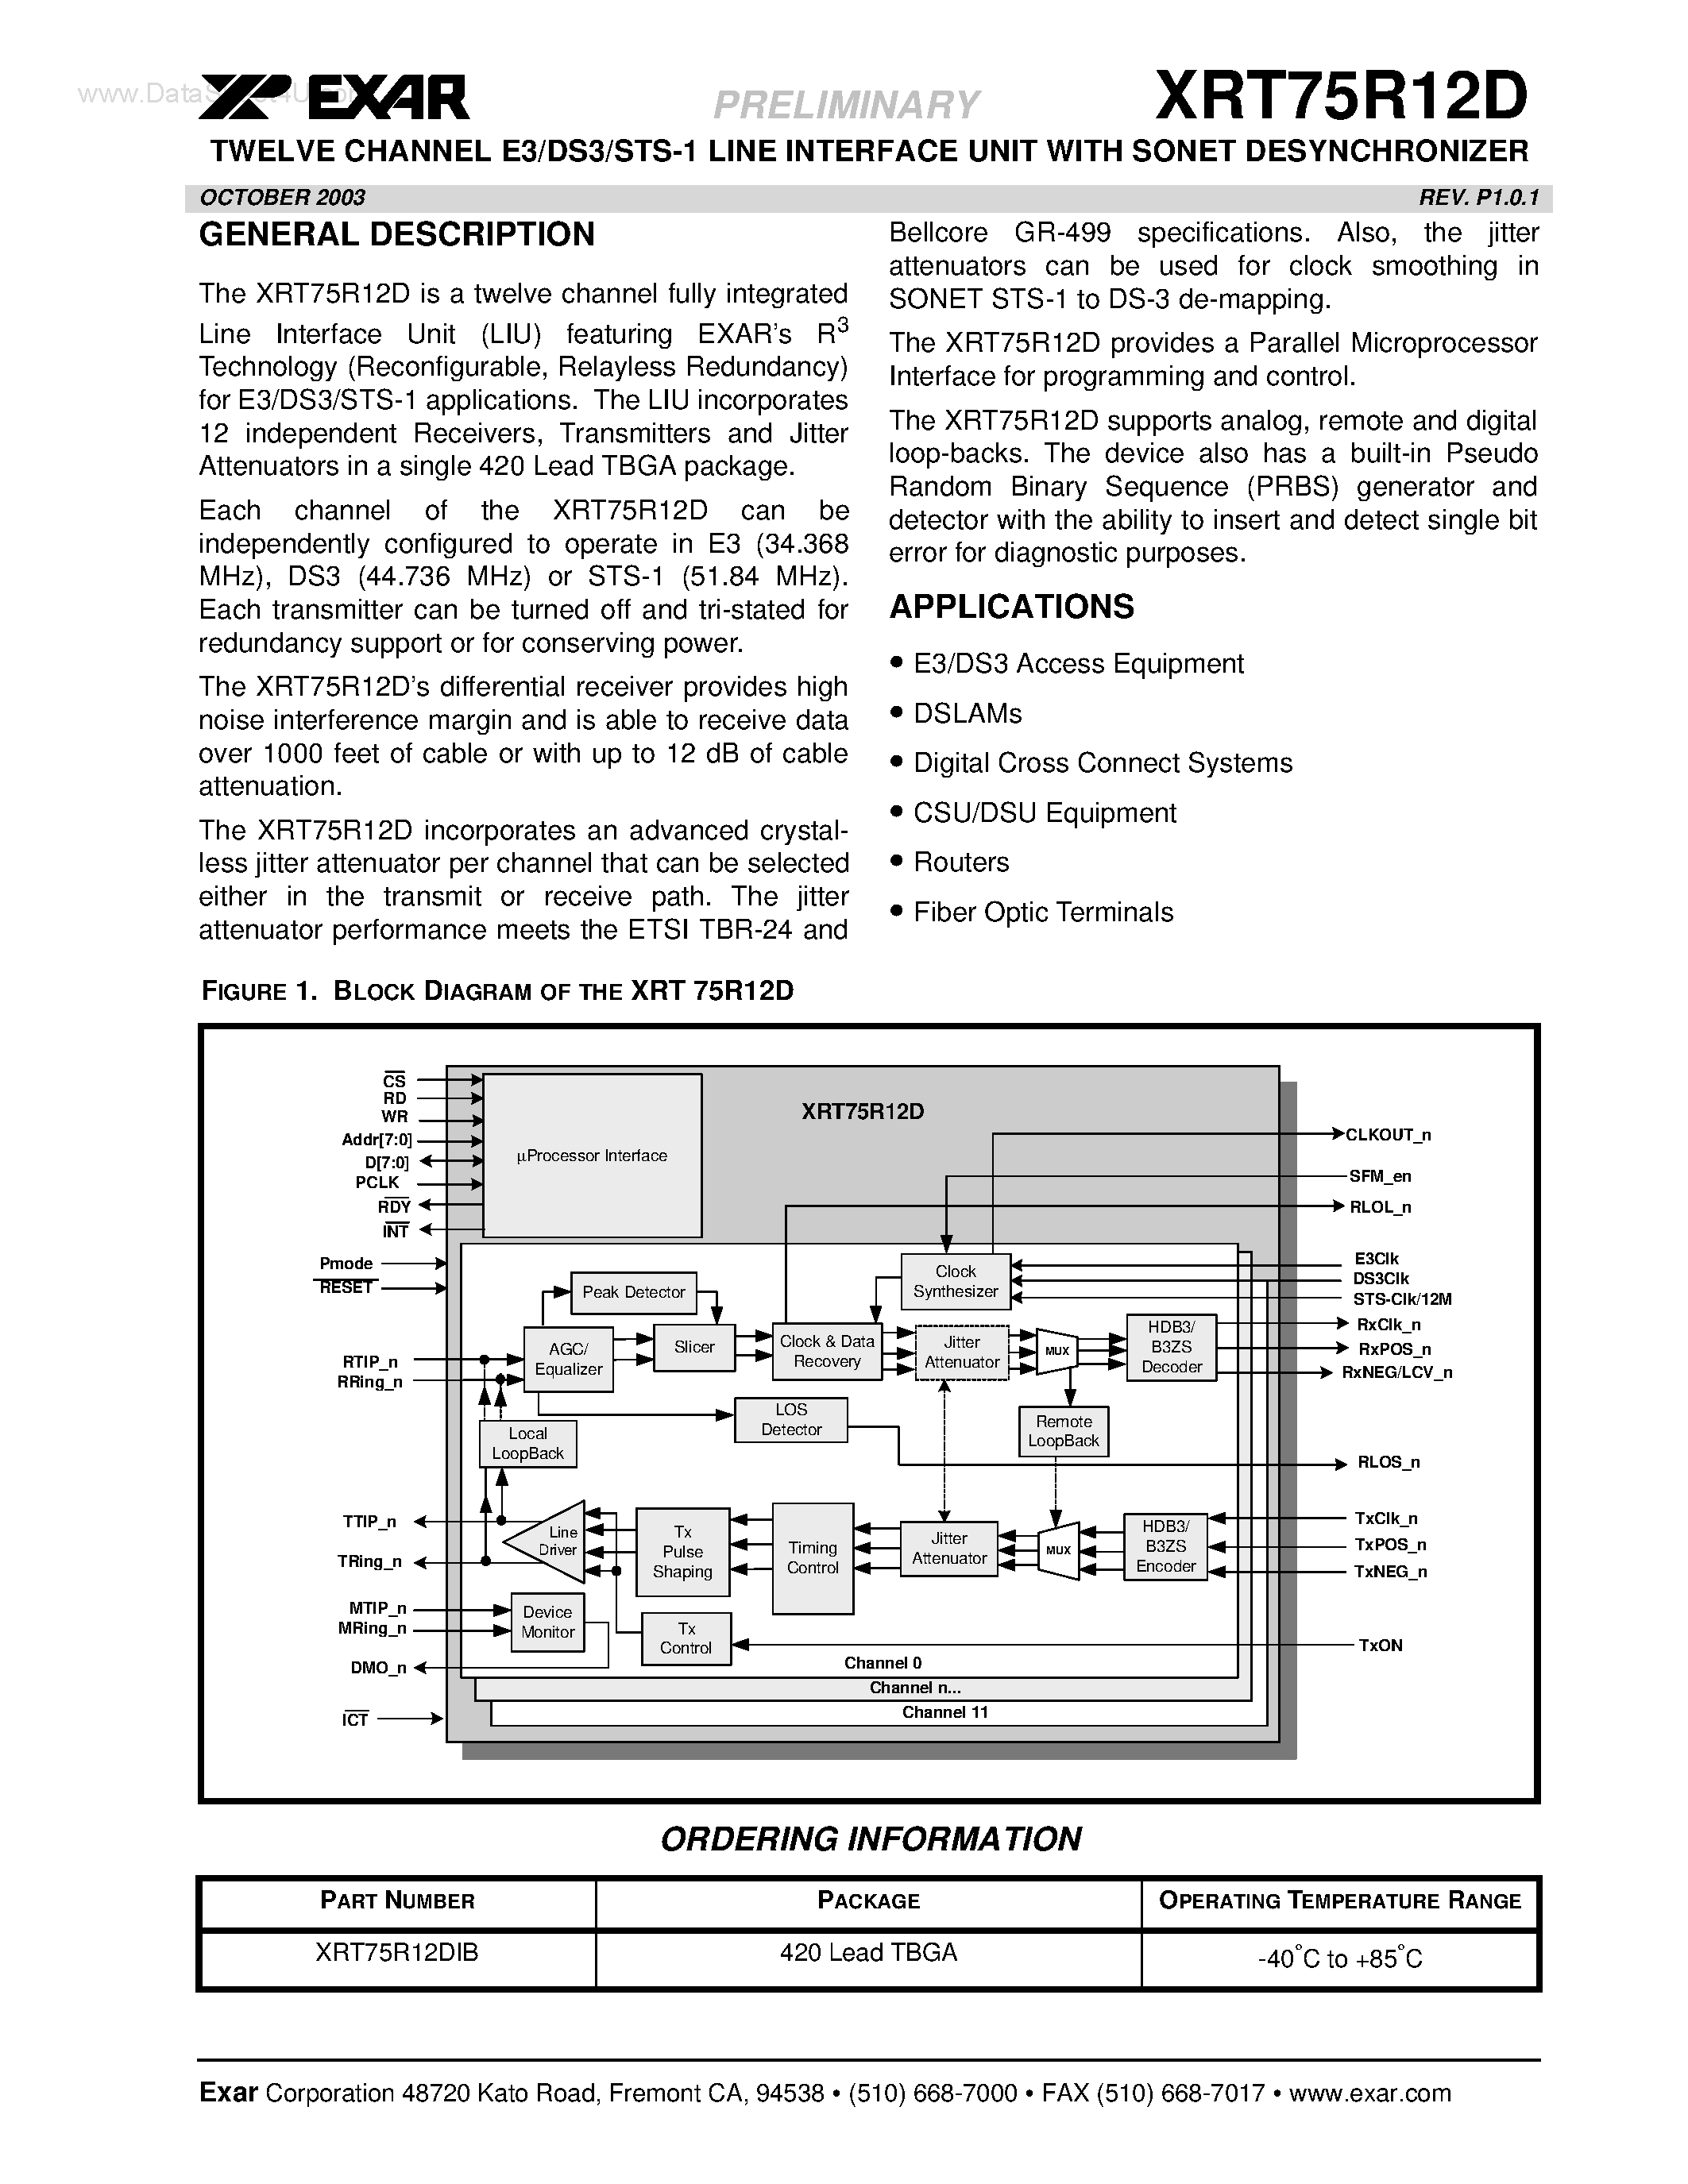 Datasheet XRT75R12D - TWELVE CHANNEL E3/DS3/STS-1 LINE INTERFACE UNIT page 1